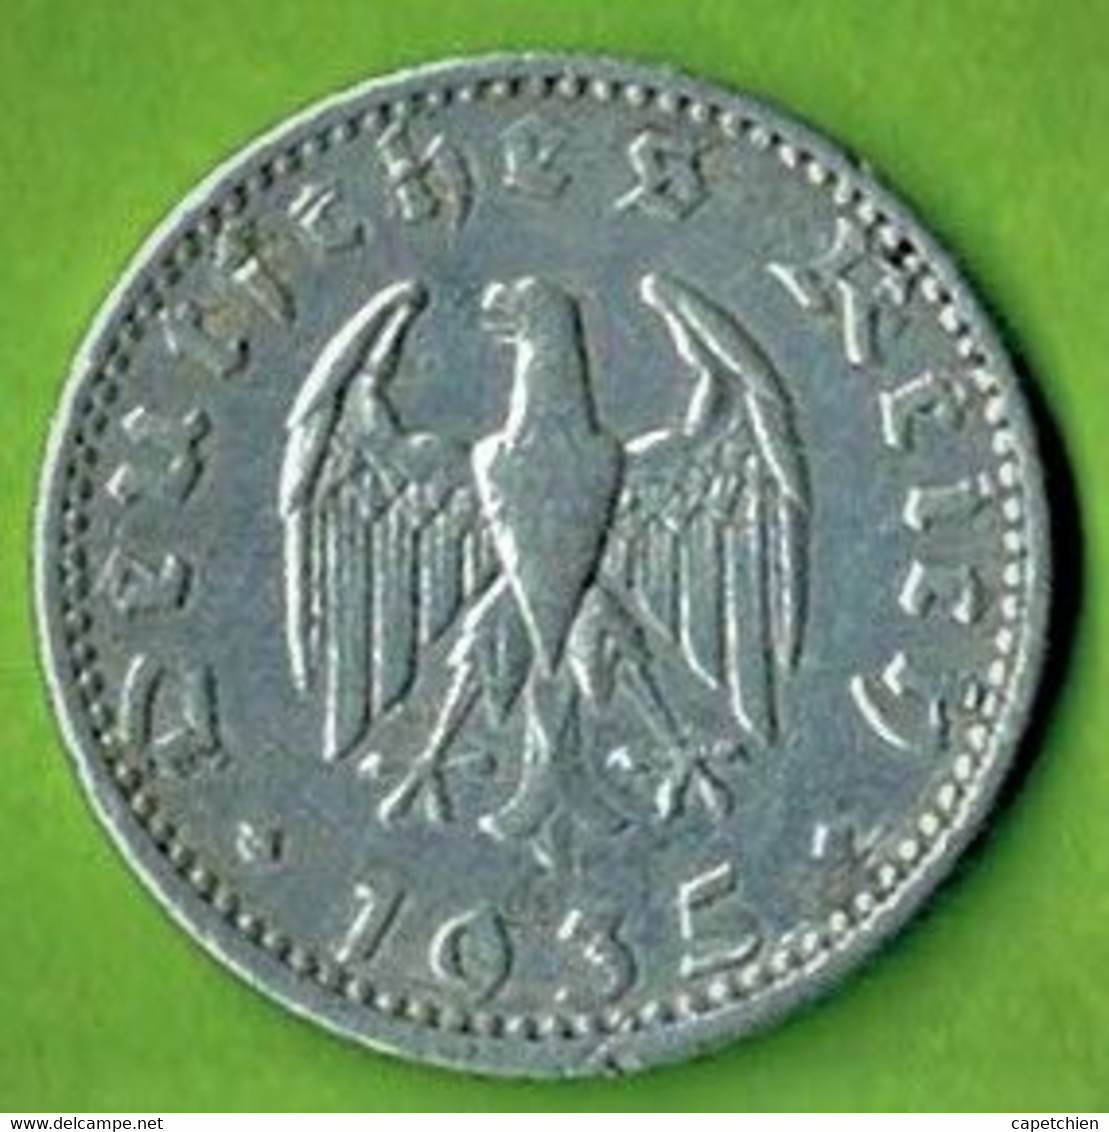 ALLEMAGNE / 50 REICHSPFENNIG / 1935 A / ALU - 50 Reichspfennig